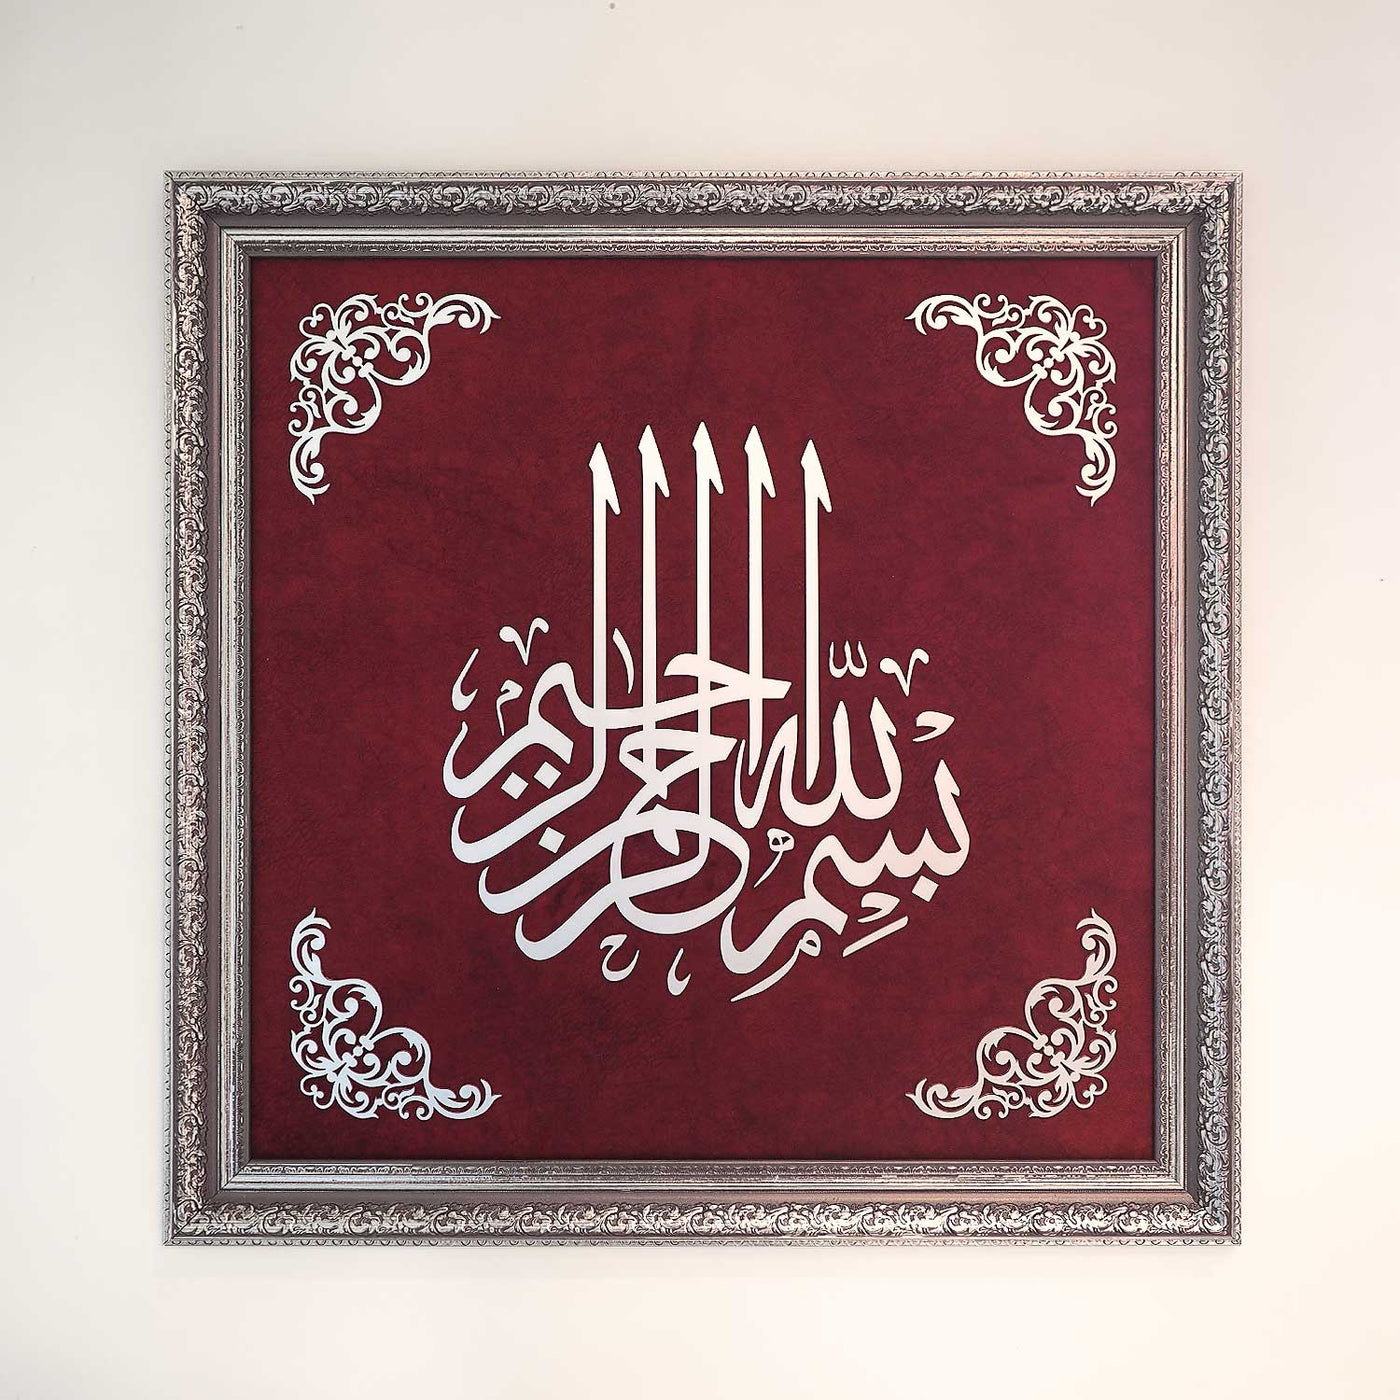 لوحة (بسم الله الرحمن الرحيم )الموضوعه على قماش المخمل ذات الجوده العالية وبالااطار المميز - WAF004